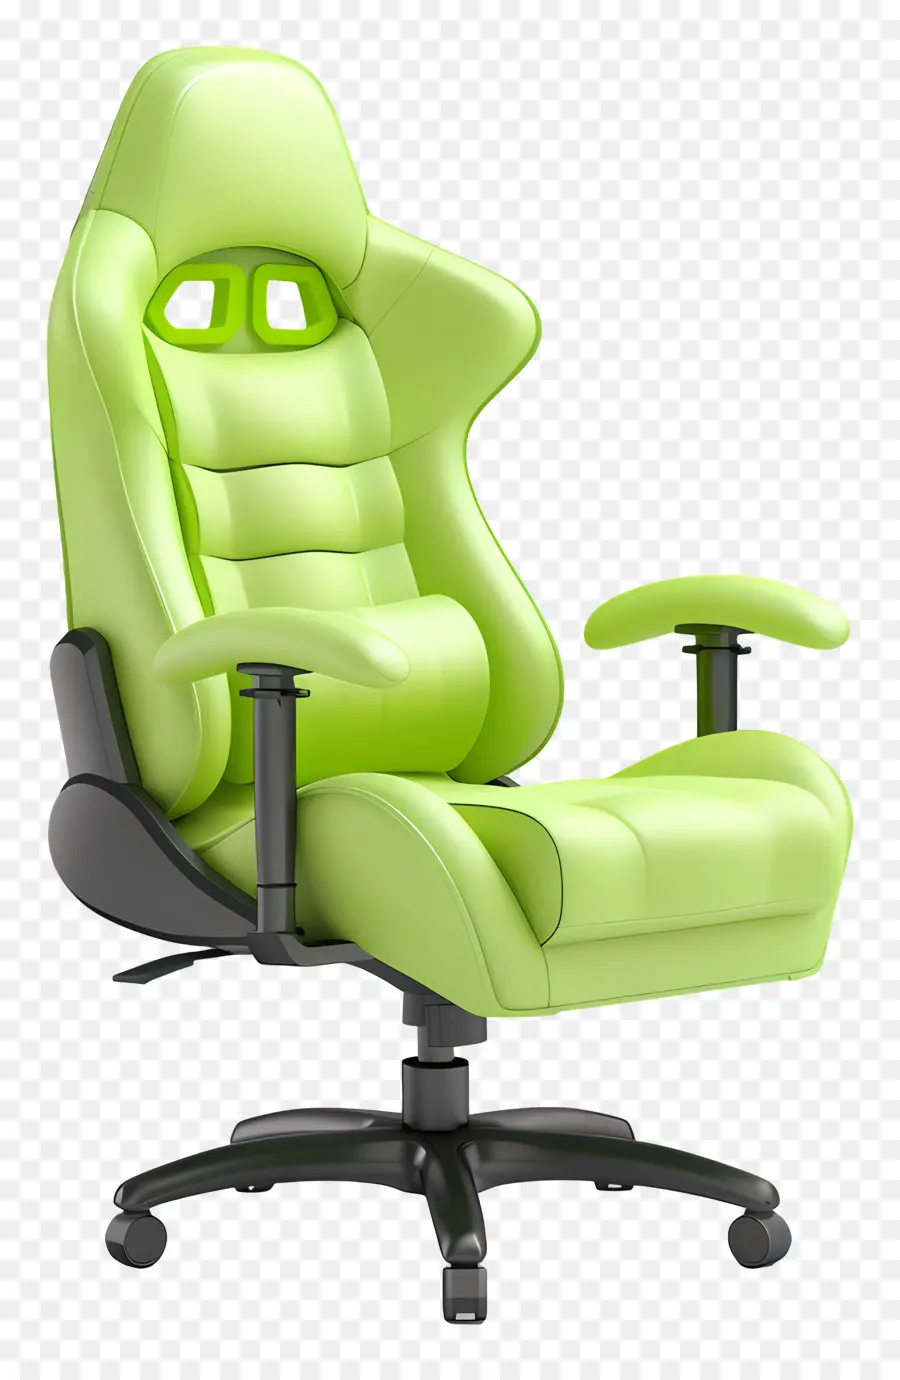 Ghế chơi game Ghế chơi game ghế màu xanh lá cây chỗ ngồi điều chỉnh tay vịn - Ghế chơi game màu xanh với tay vịn có thể điều chỉnh